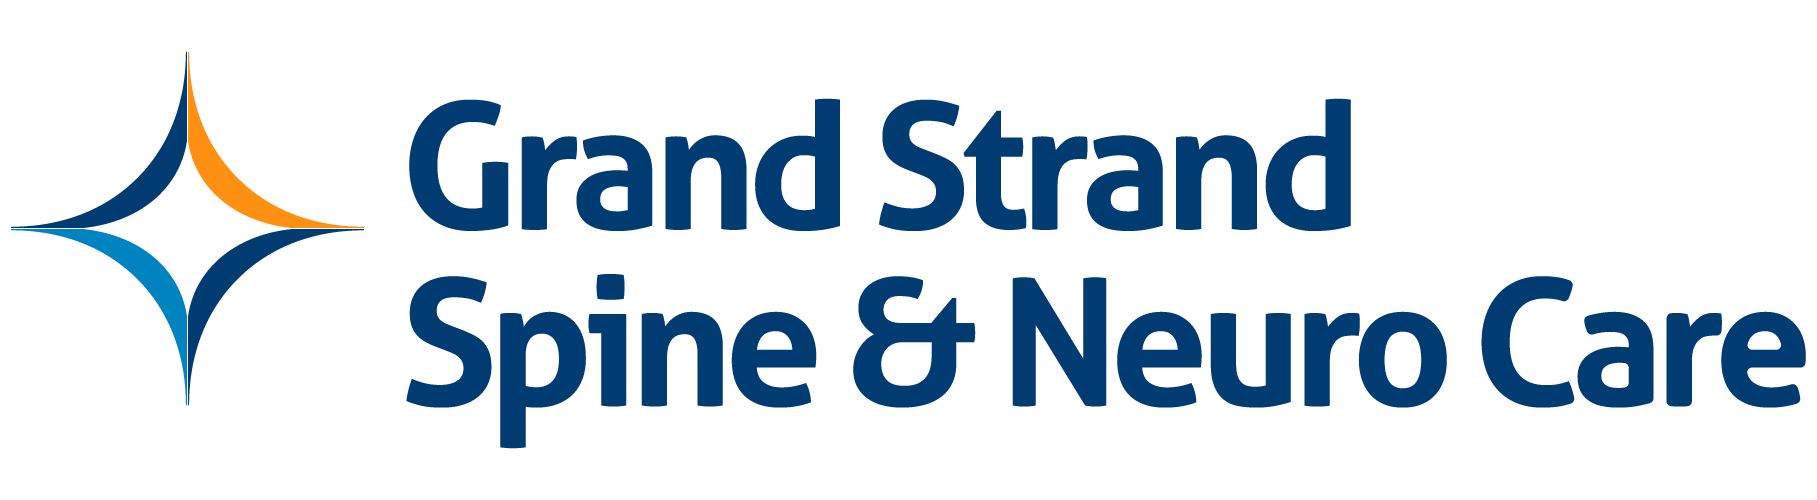 Grand Strand Spine & Neuro Care